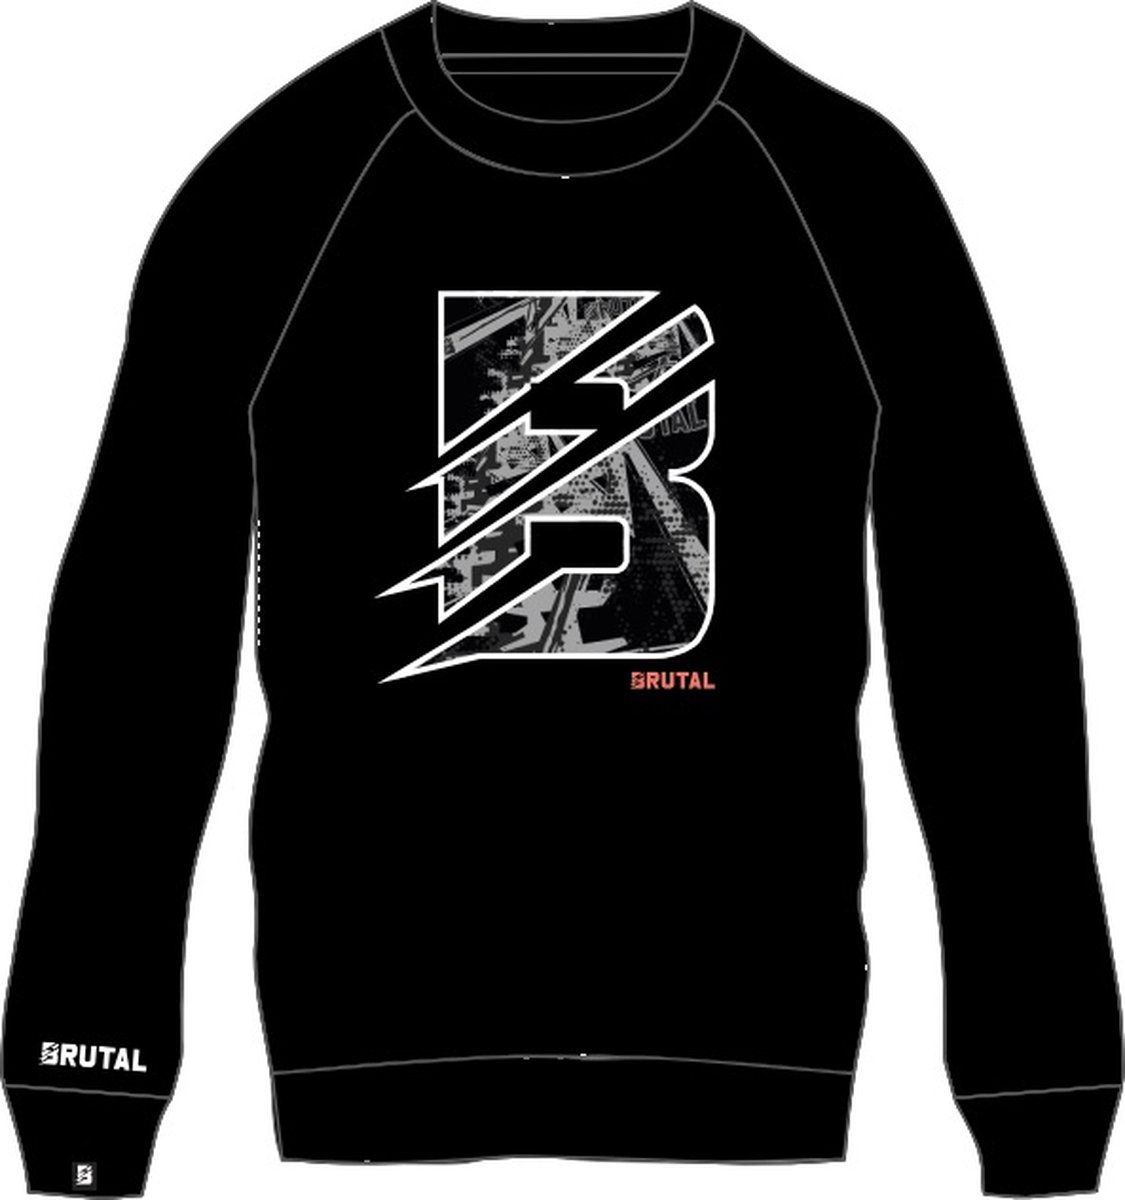 BRUTAL® - Sweater - Sweatshirt Trui - Trui - Zwart - Grijs - Trui - Heren -Dames - Maat XL